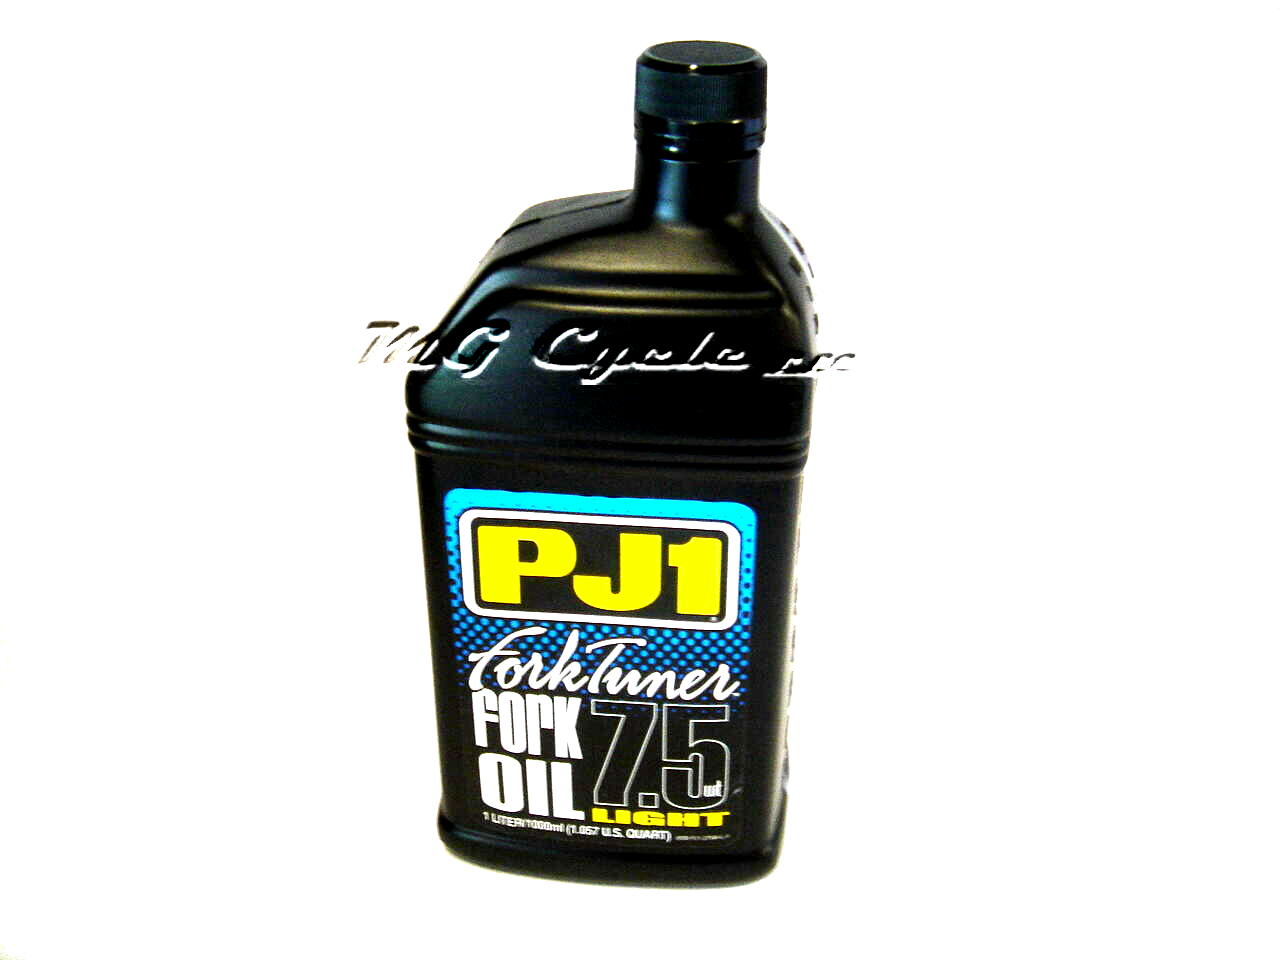 PJ1 Fork Tuner fork oil 7.5W light, 1 liter bottle